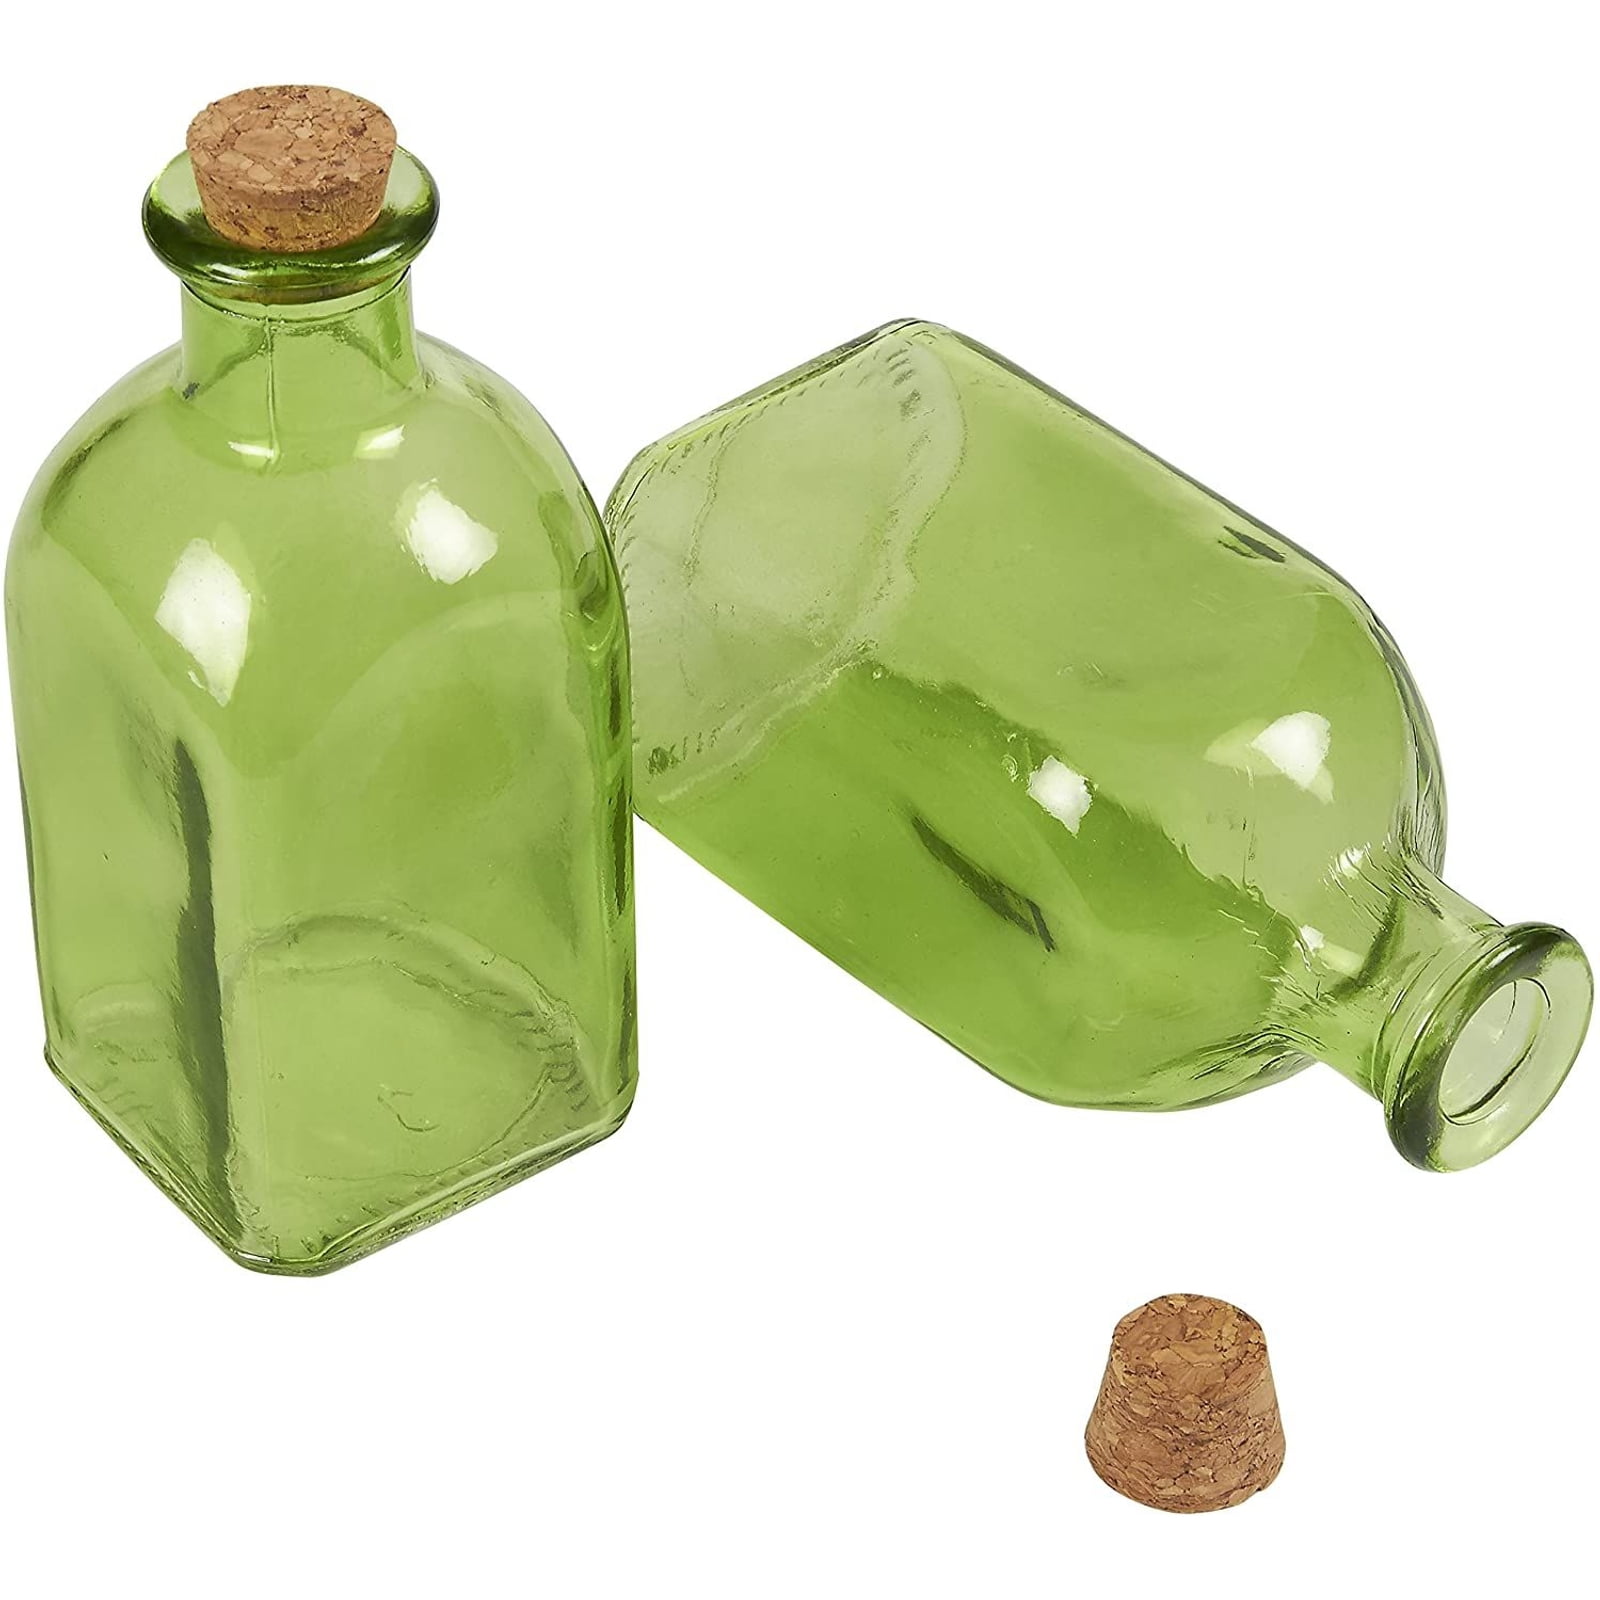 12 oz Glass Bottle w/Drop Lock Thread (12 per case) —